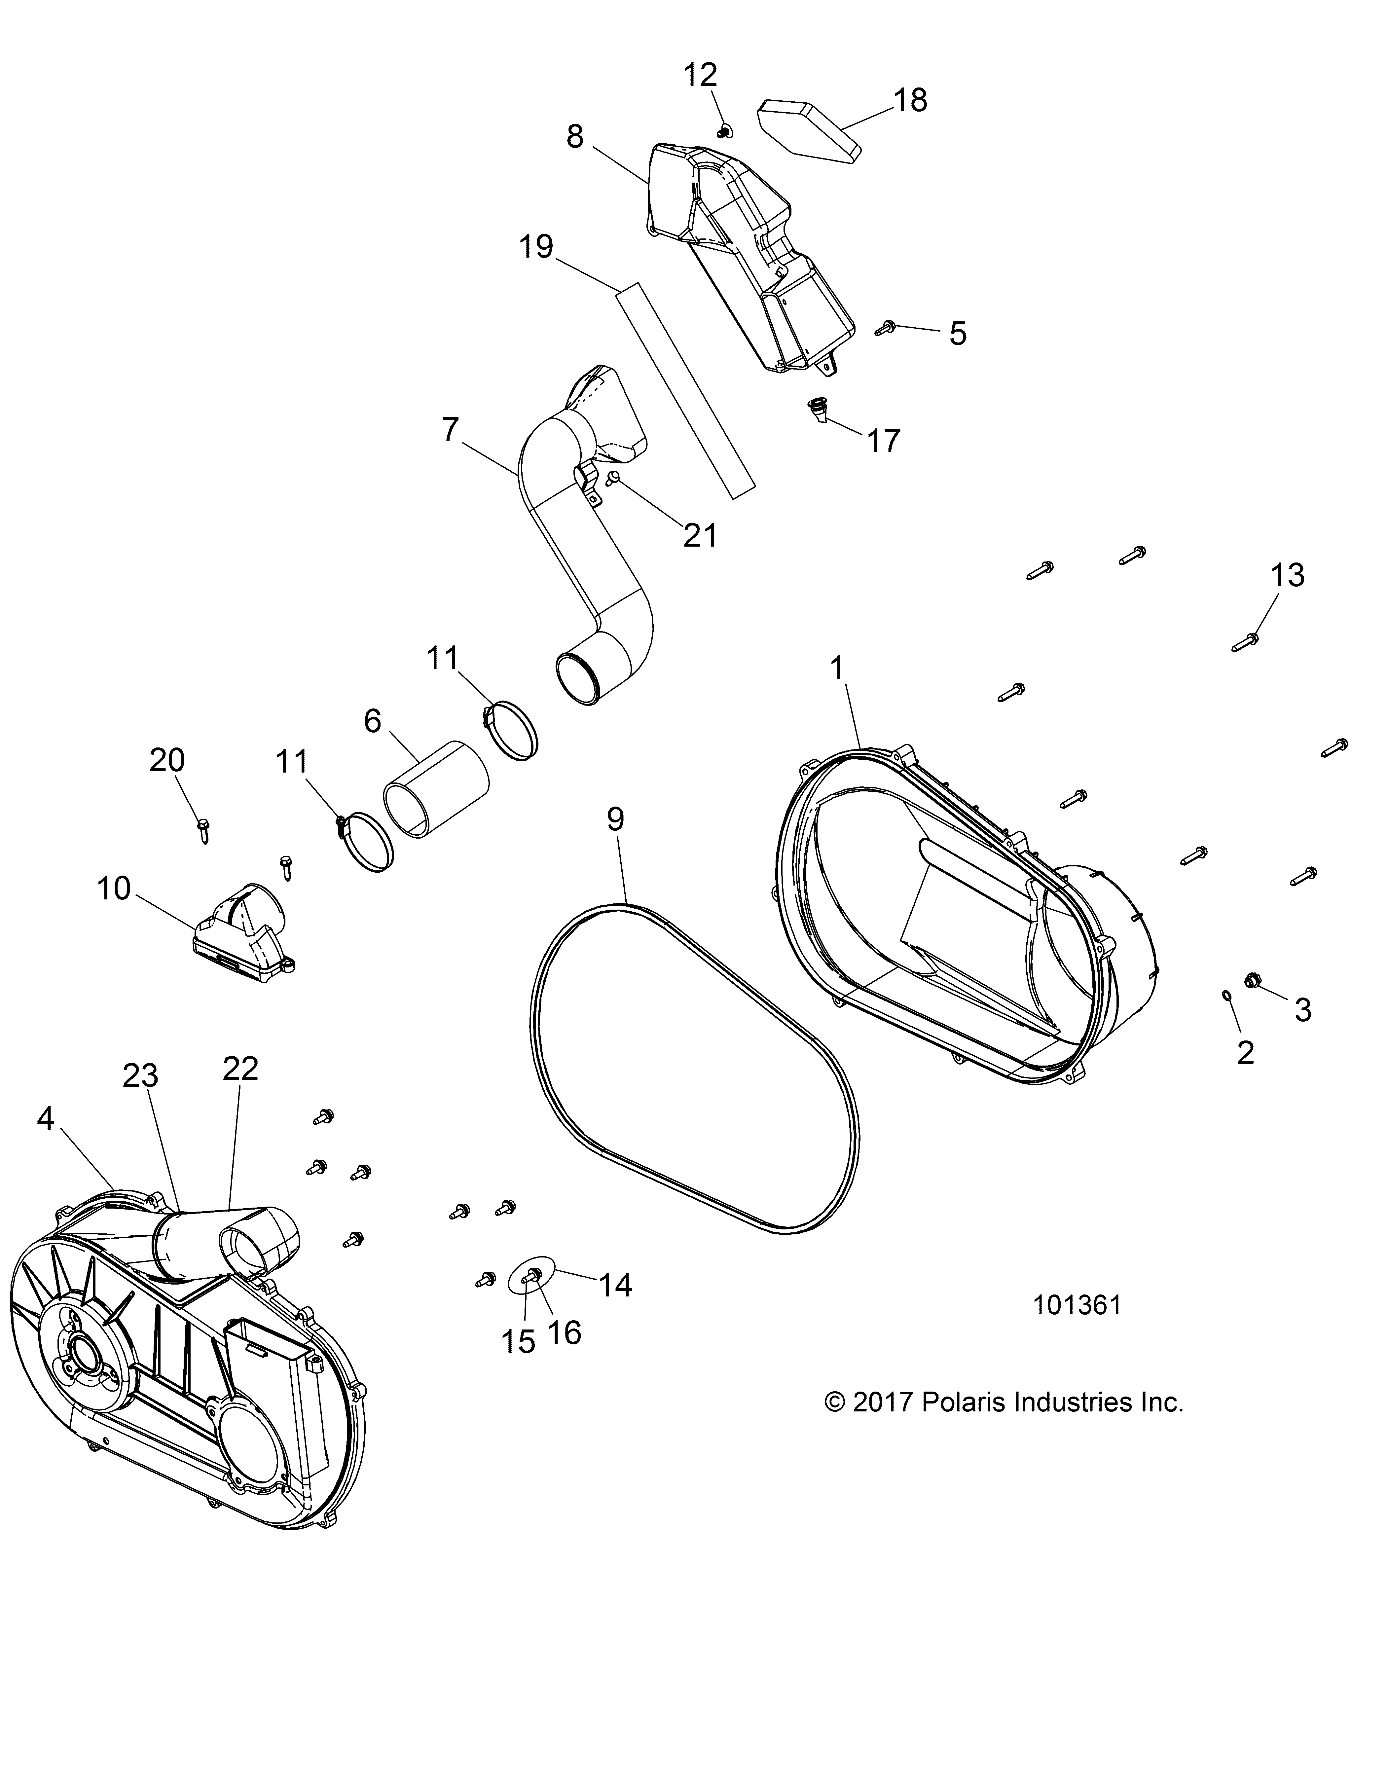 Foto diagrama Polaris que contem a peça 5521831